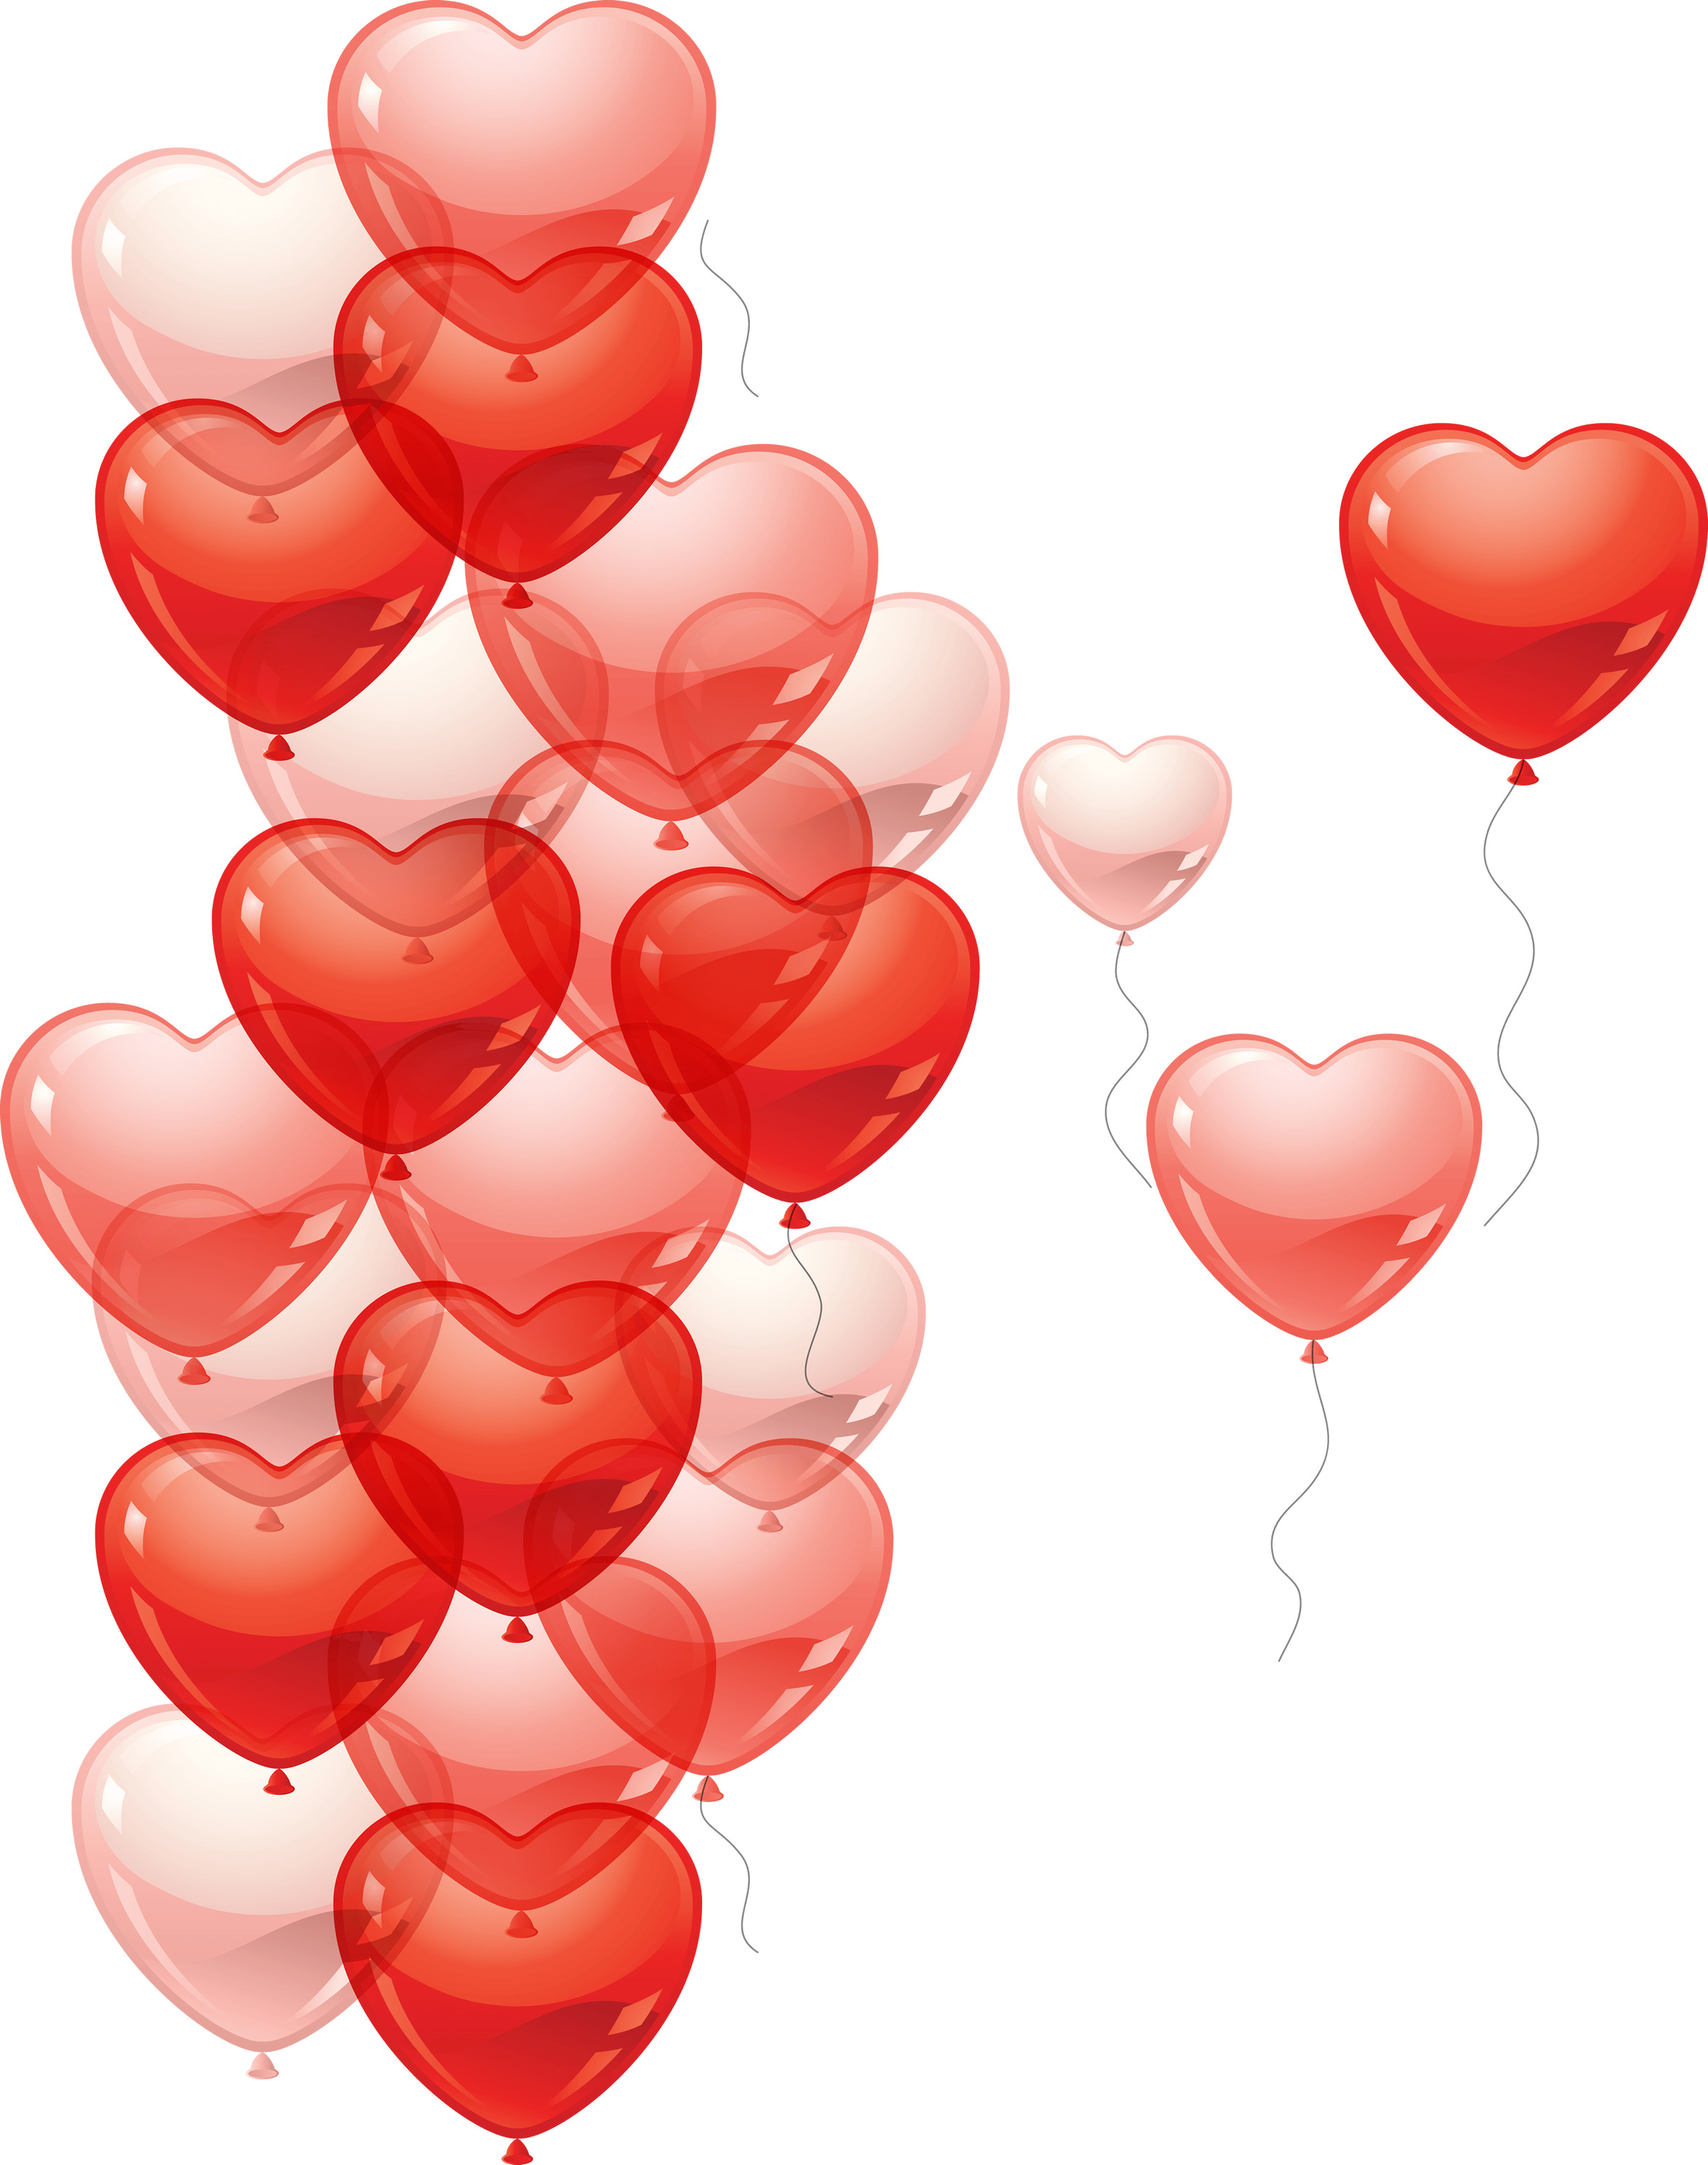 Heart Rain Balloon icons